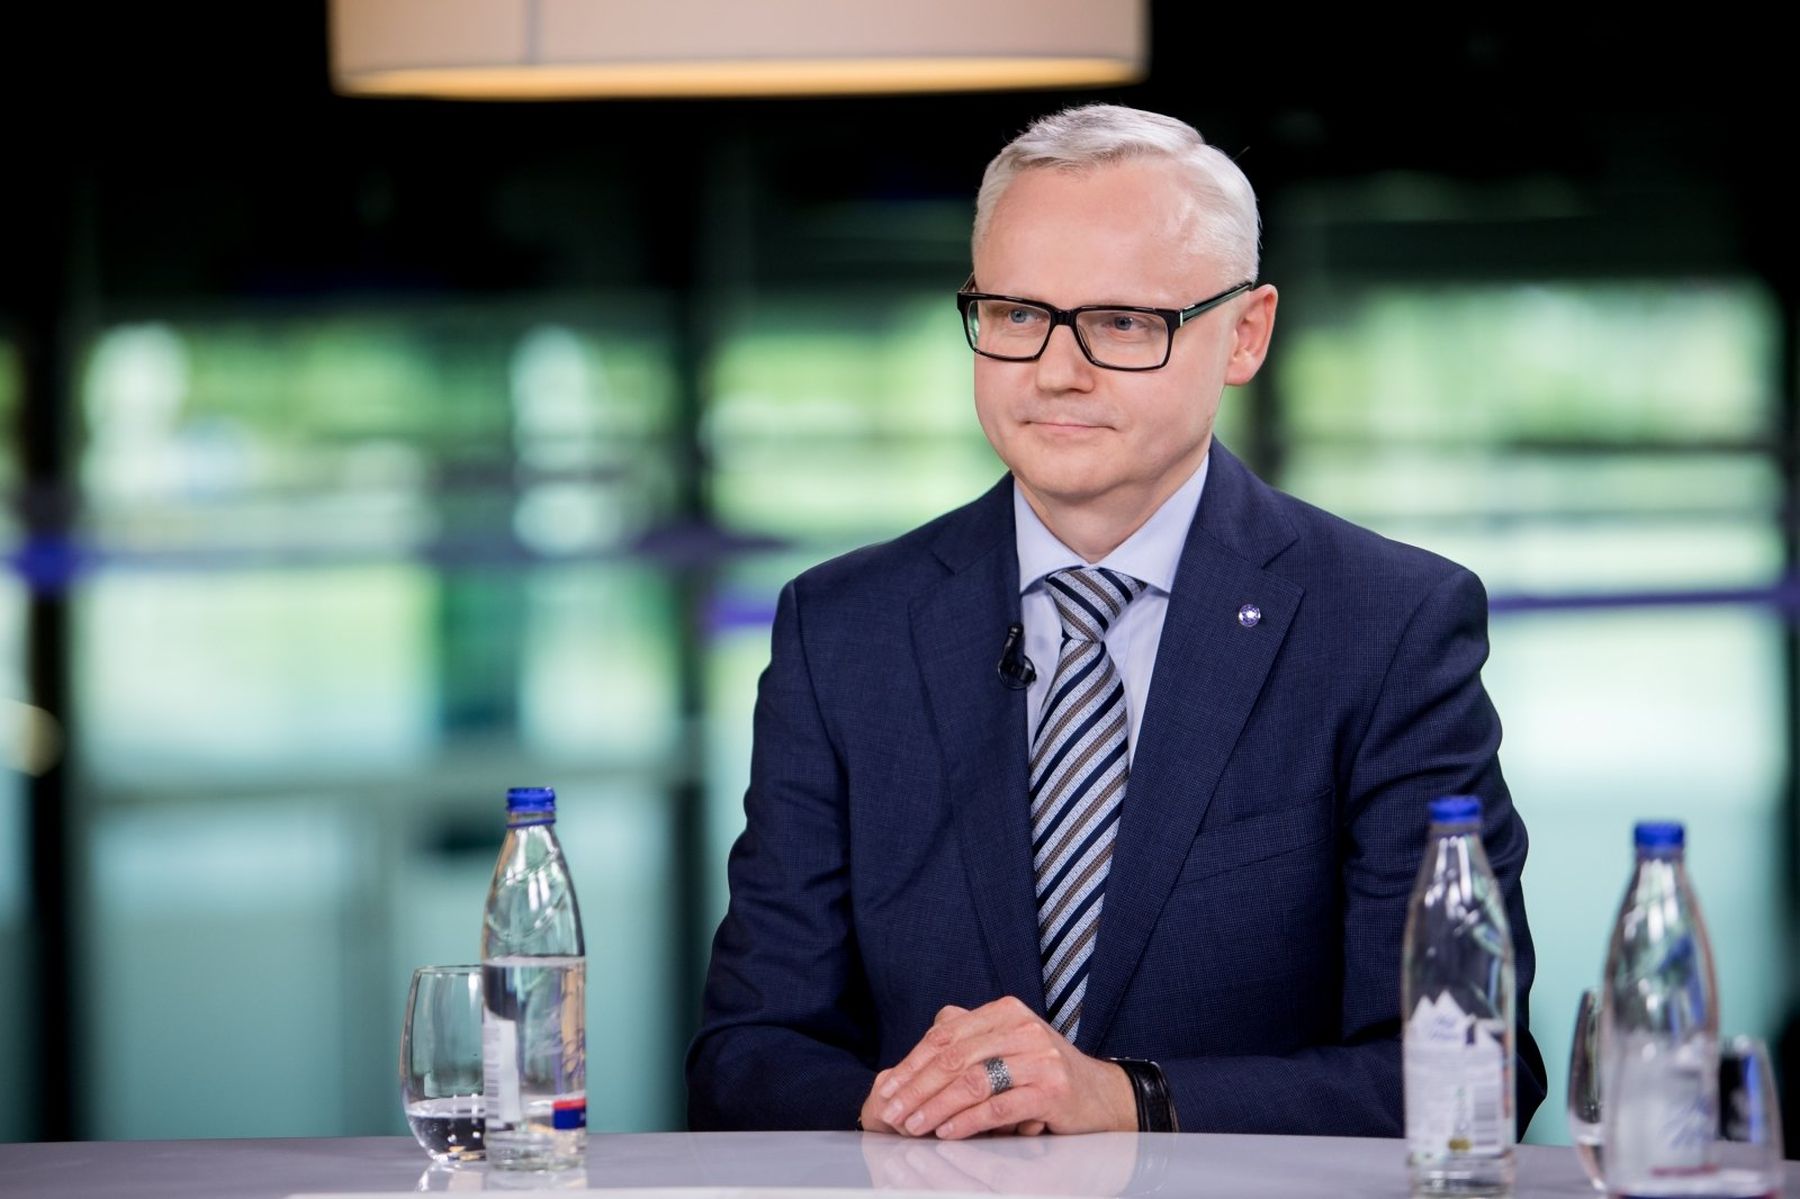 Advokatas Vytautas Mizaras paskirtas Konstitucinio Teismo (KT) teisėju.